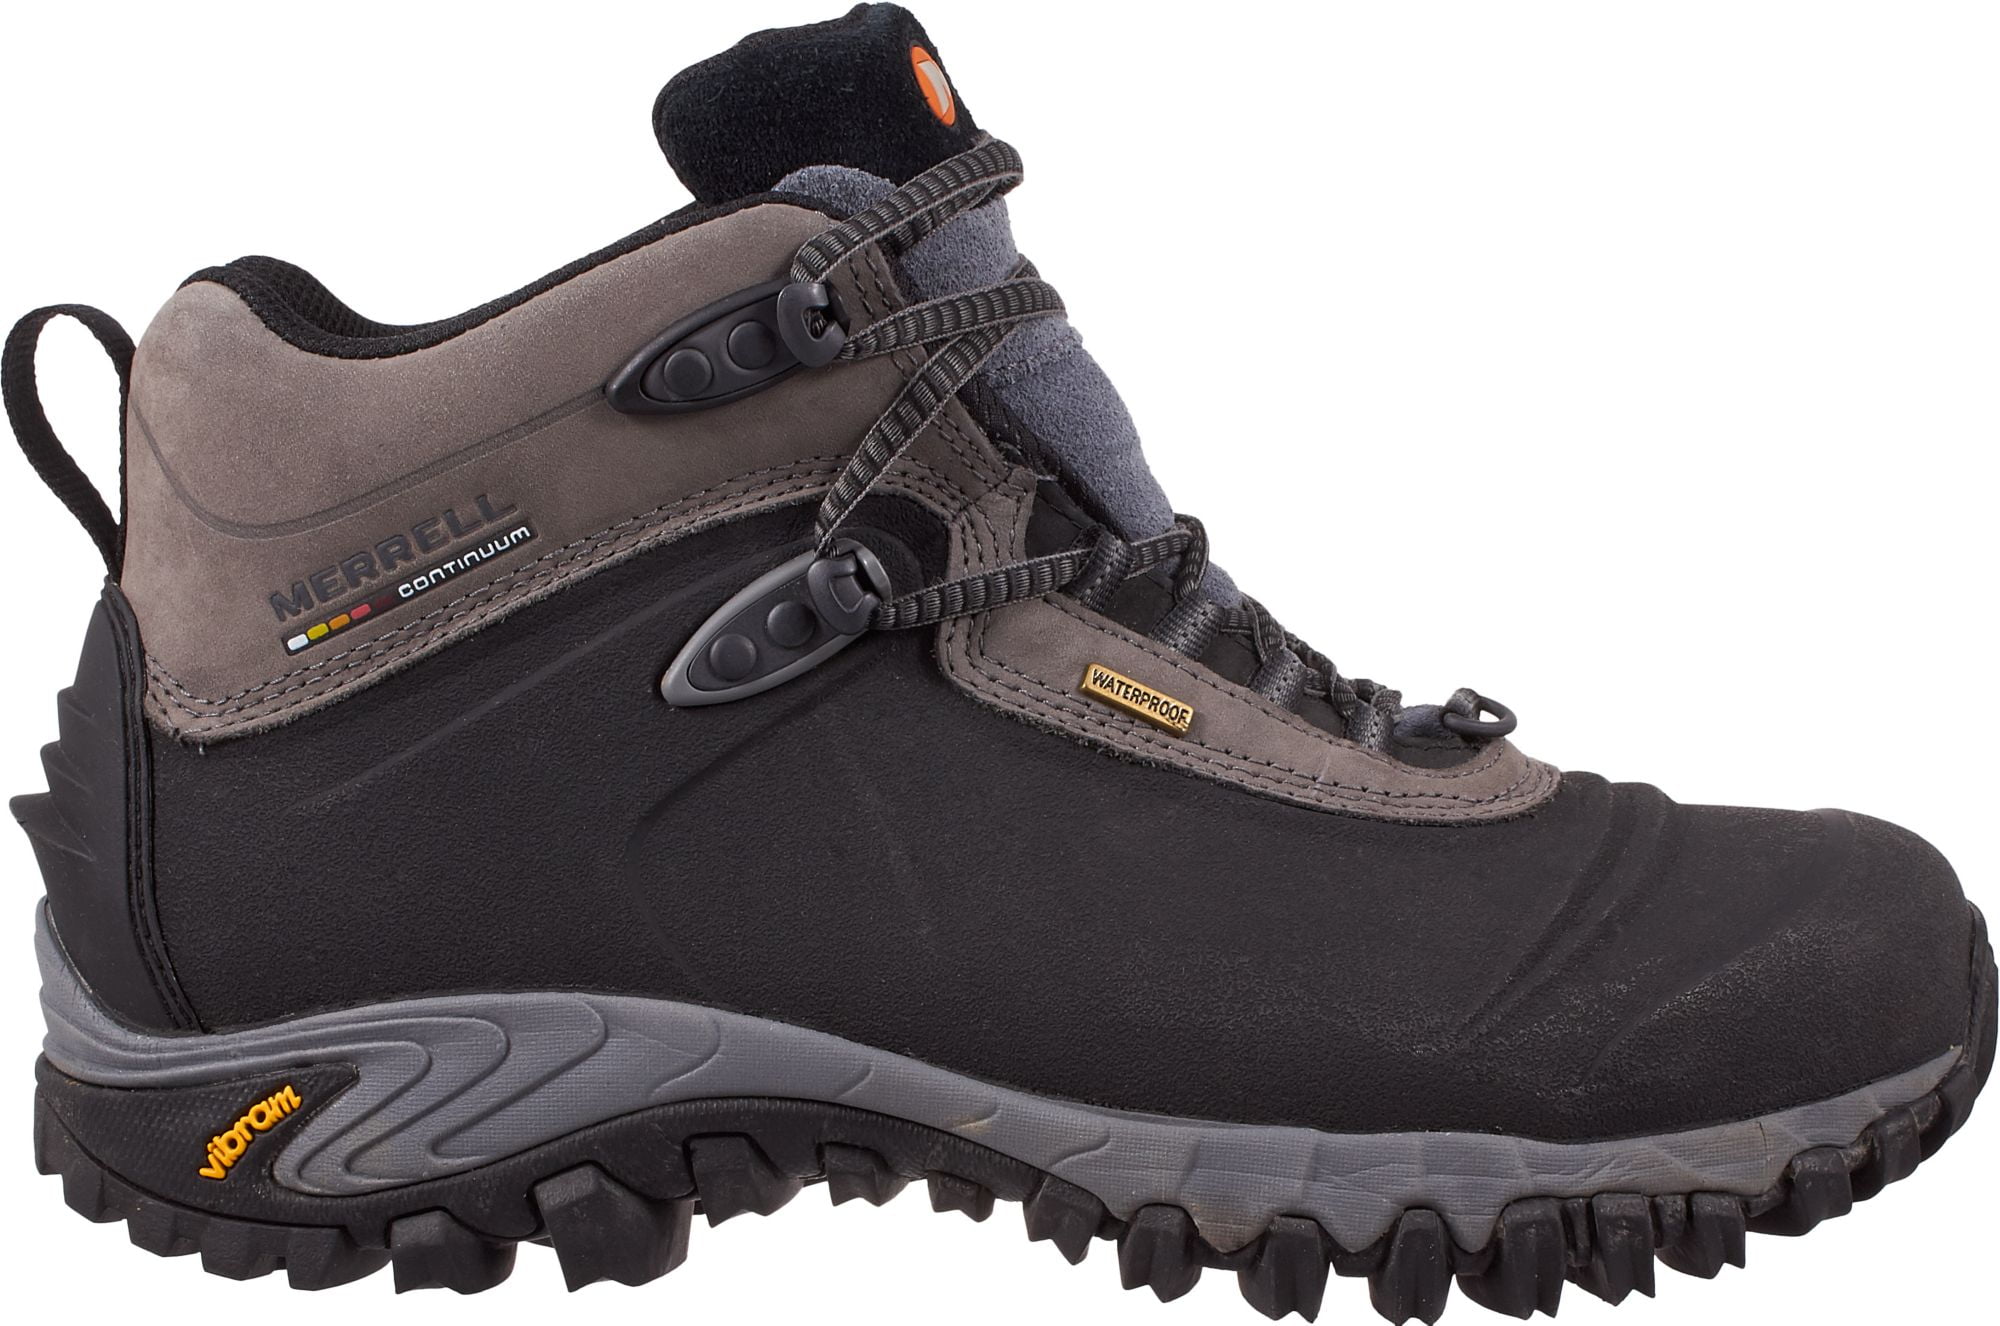 waterproof boots merrell